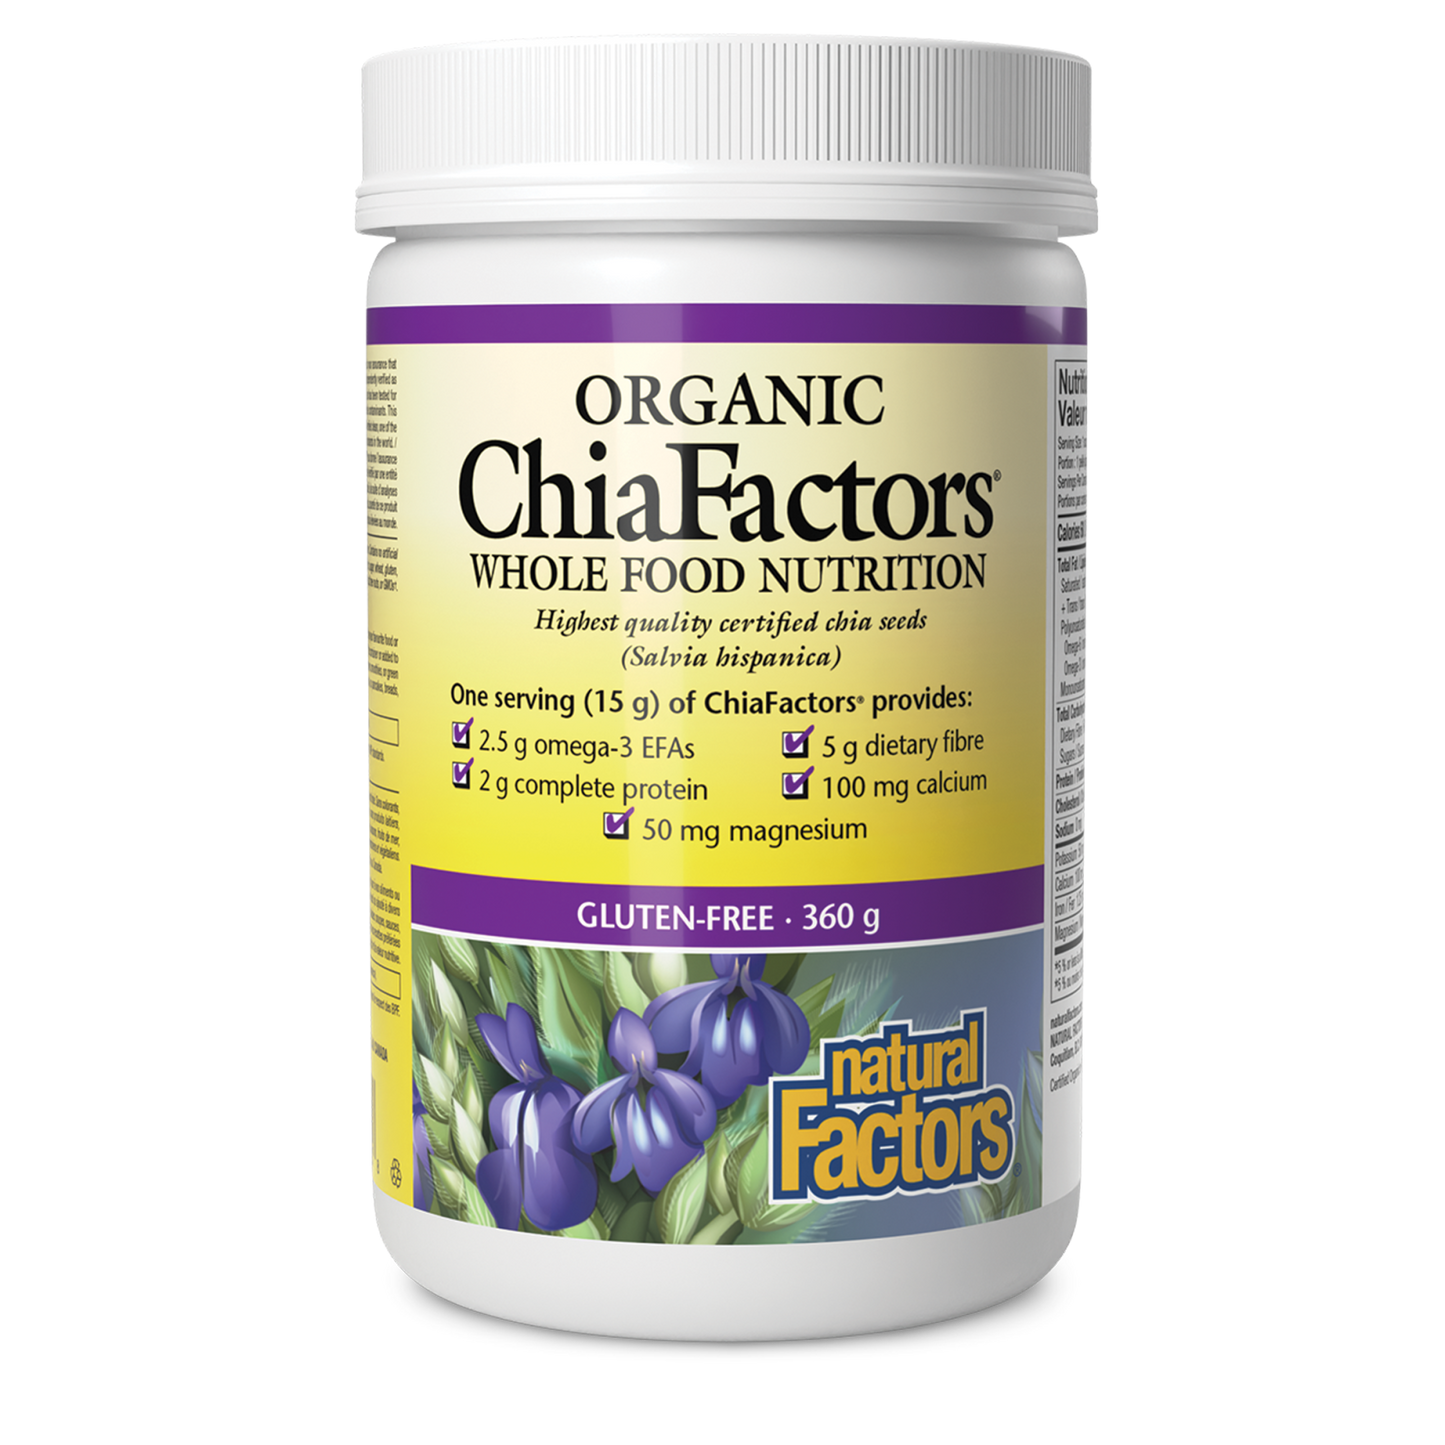 Organic ChiaFactors, Natural Factors|v|image|2920